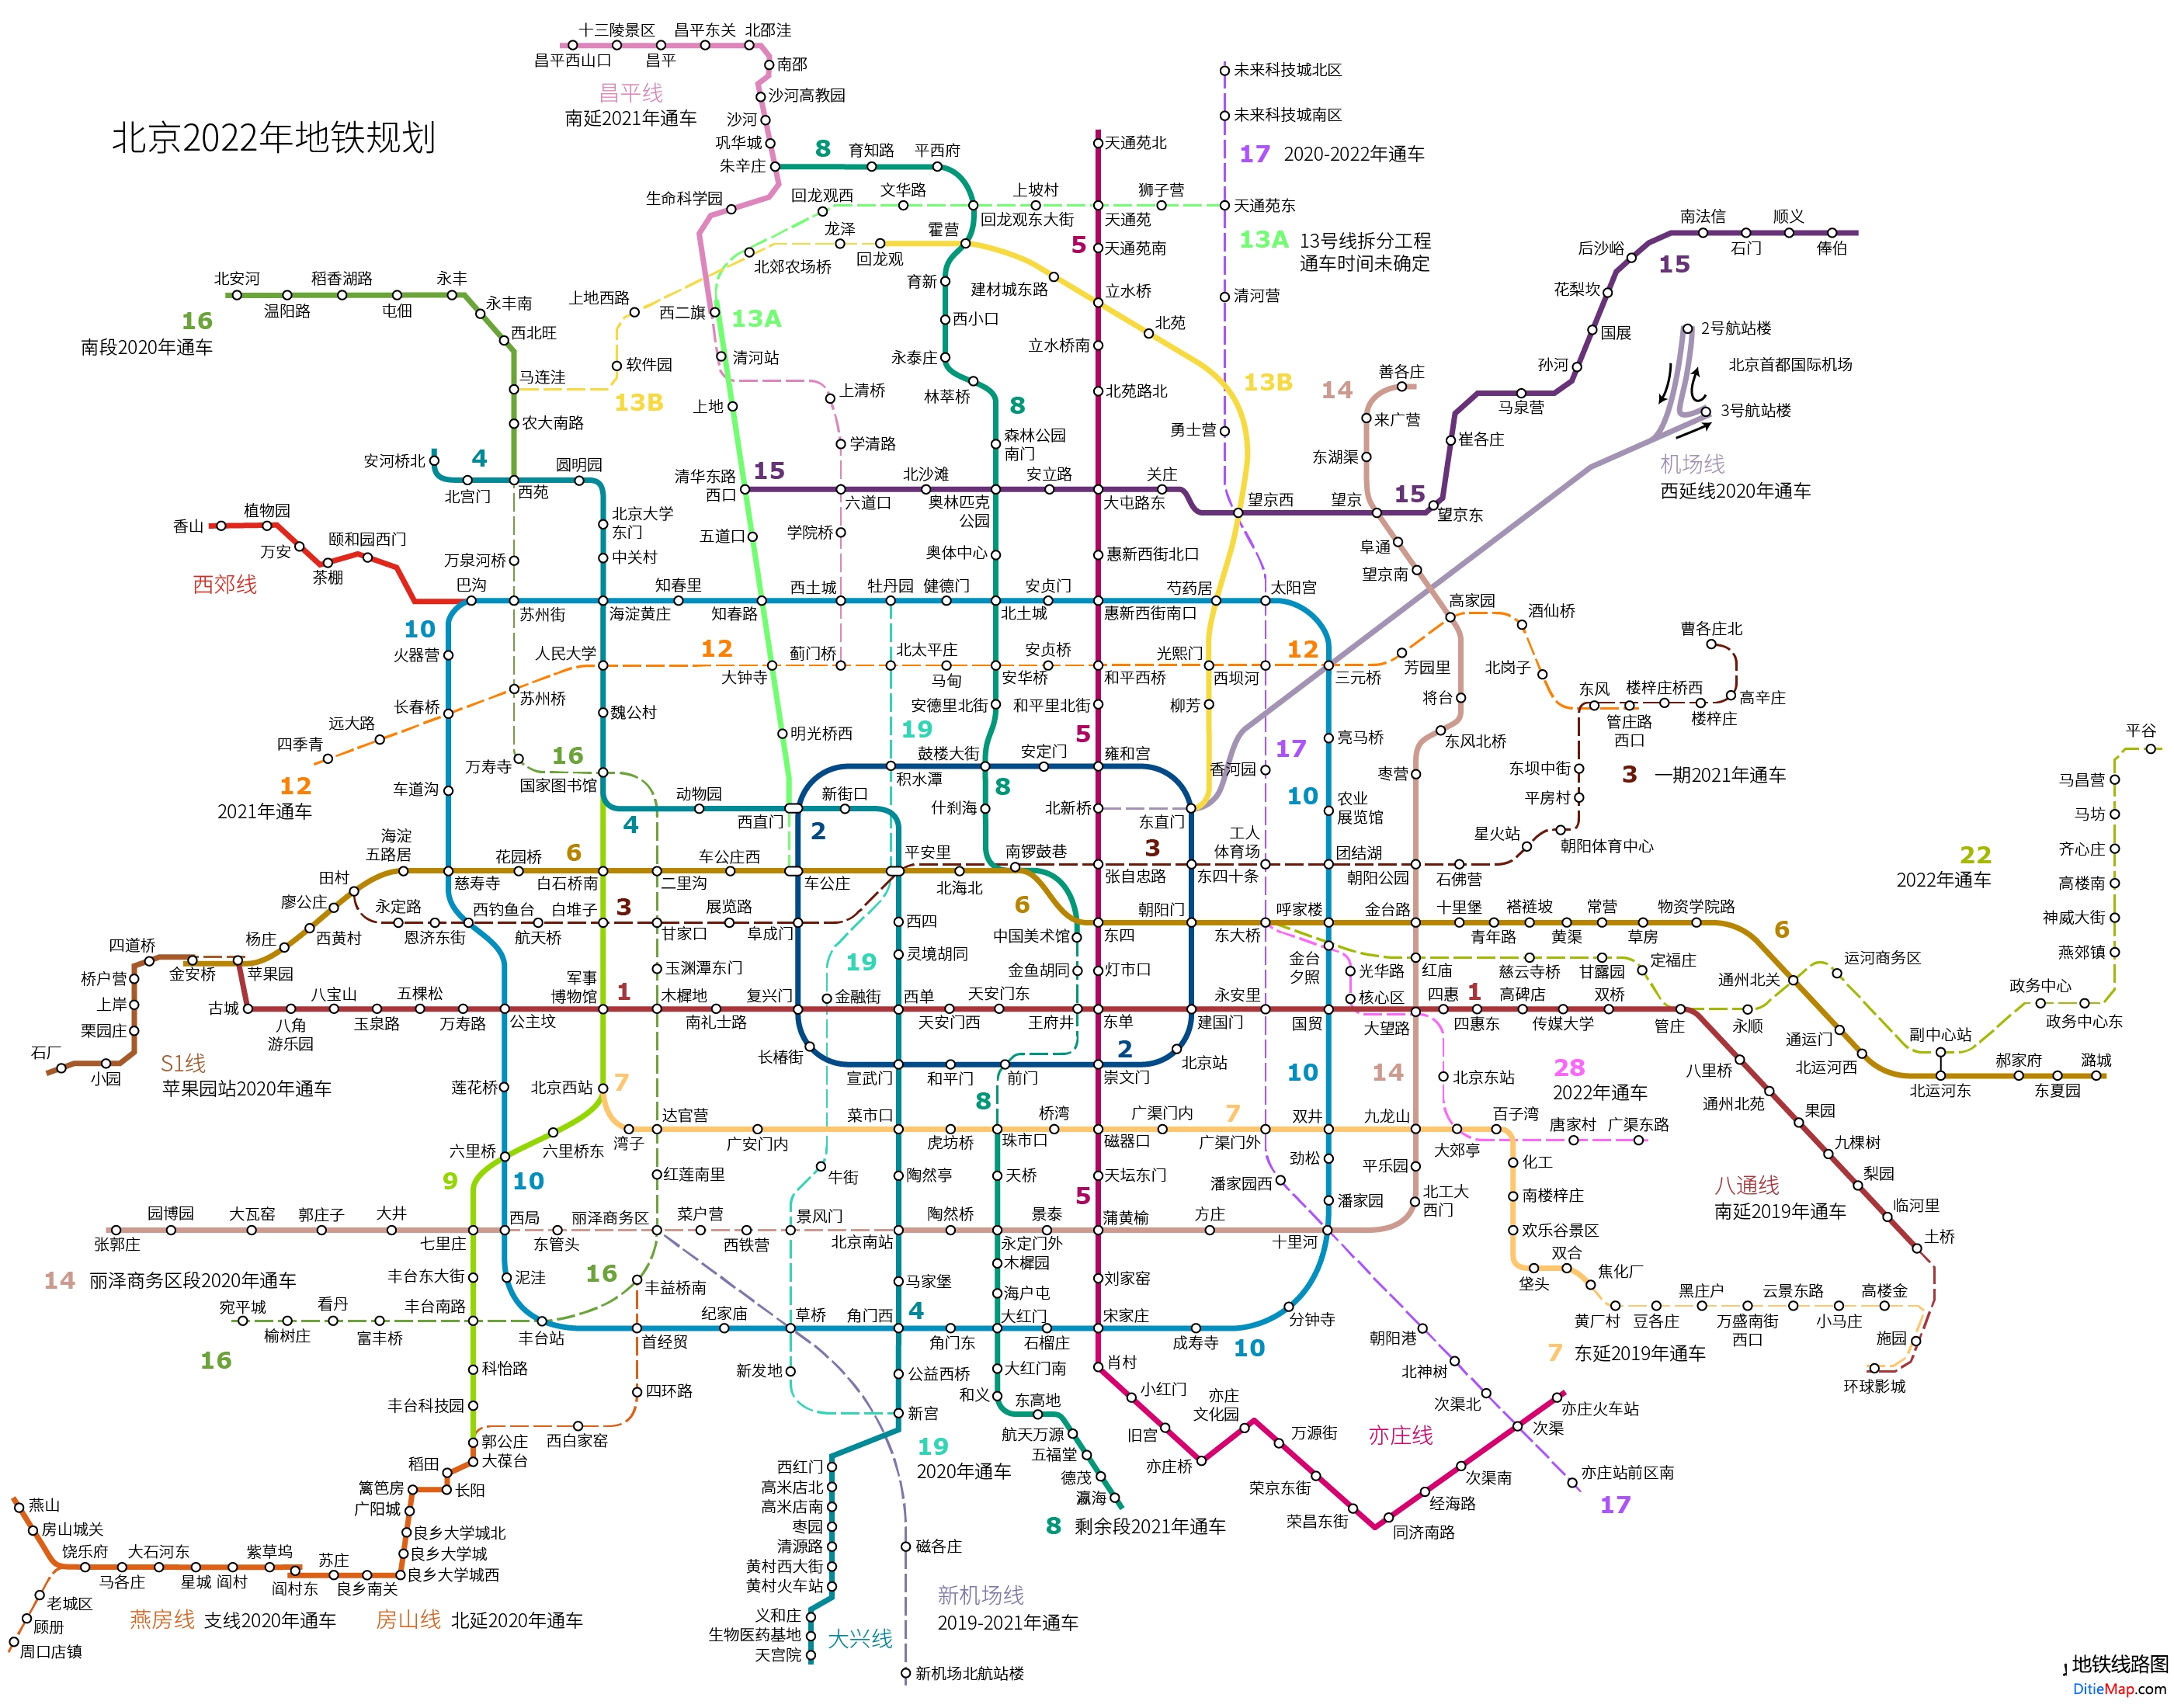 北京地铁线路图 运营时间票价站点 查询下载 北京地铁线路图 北京地铁票价 北京地铁运营时间 北京地铁 北京地铁线路图  第2张